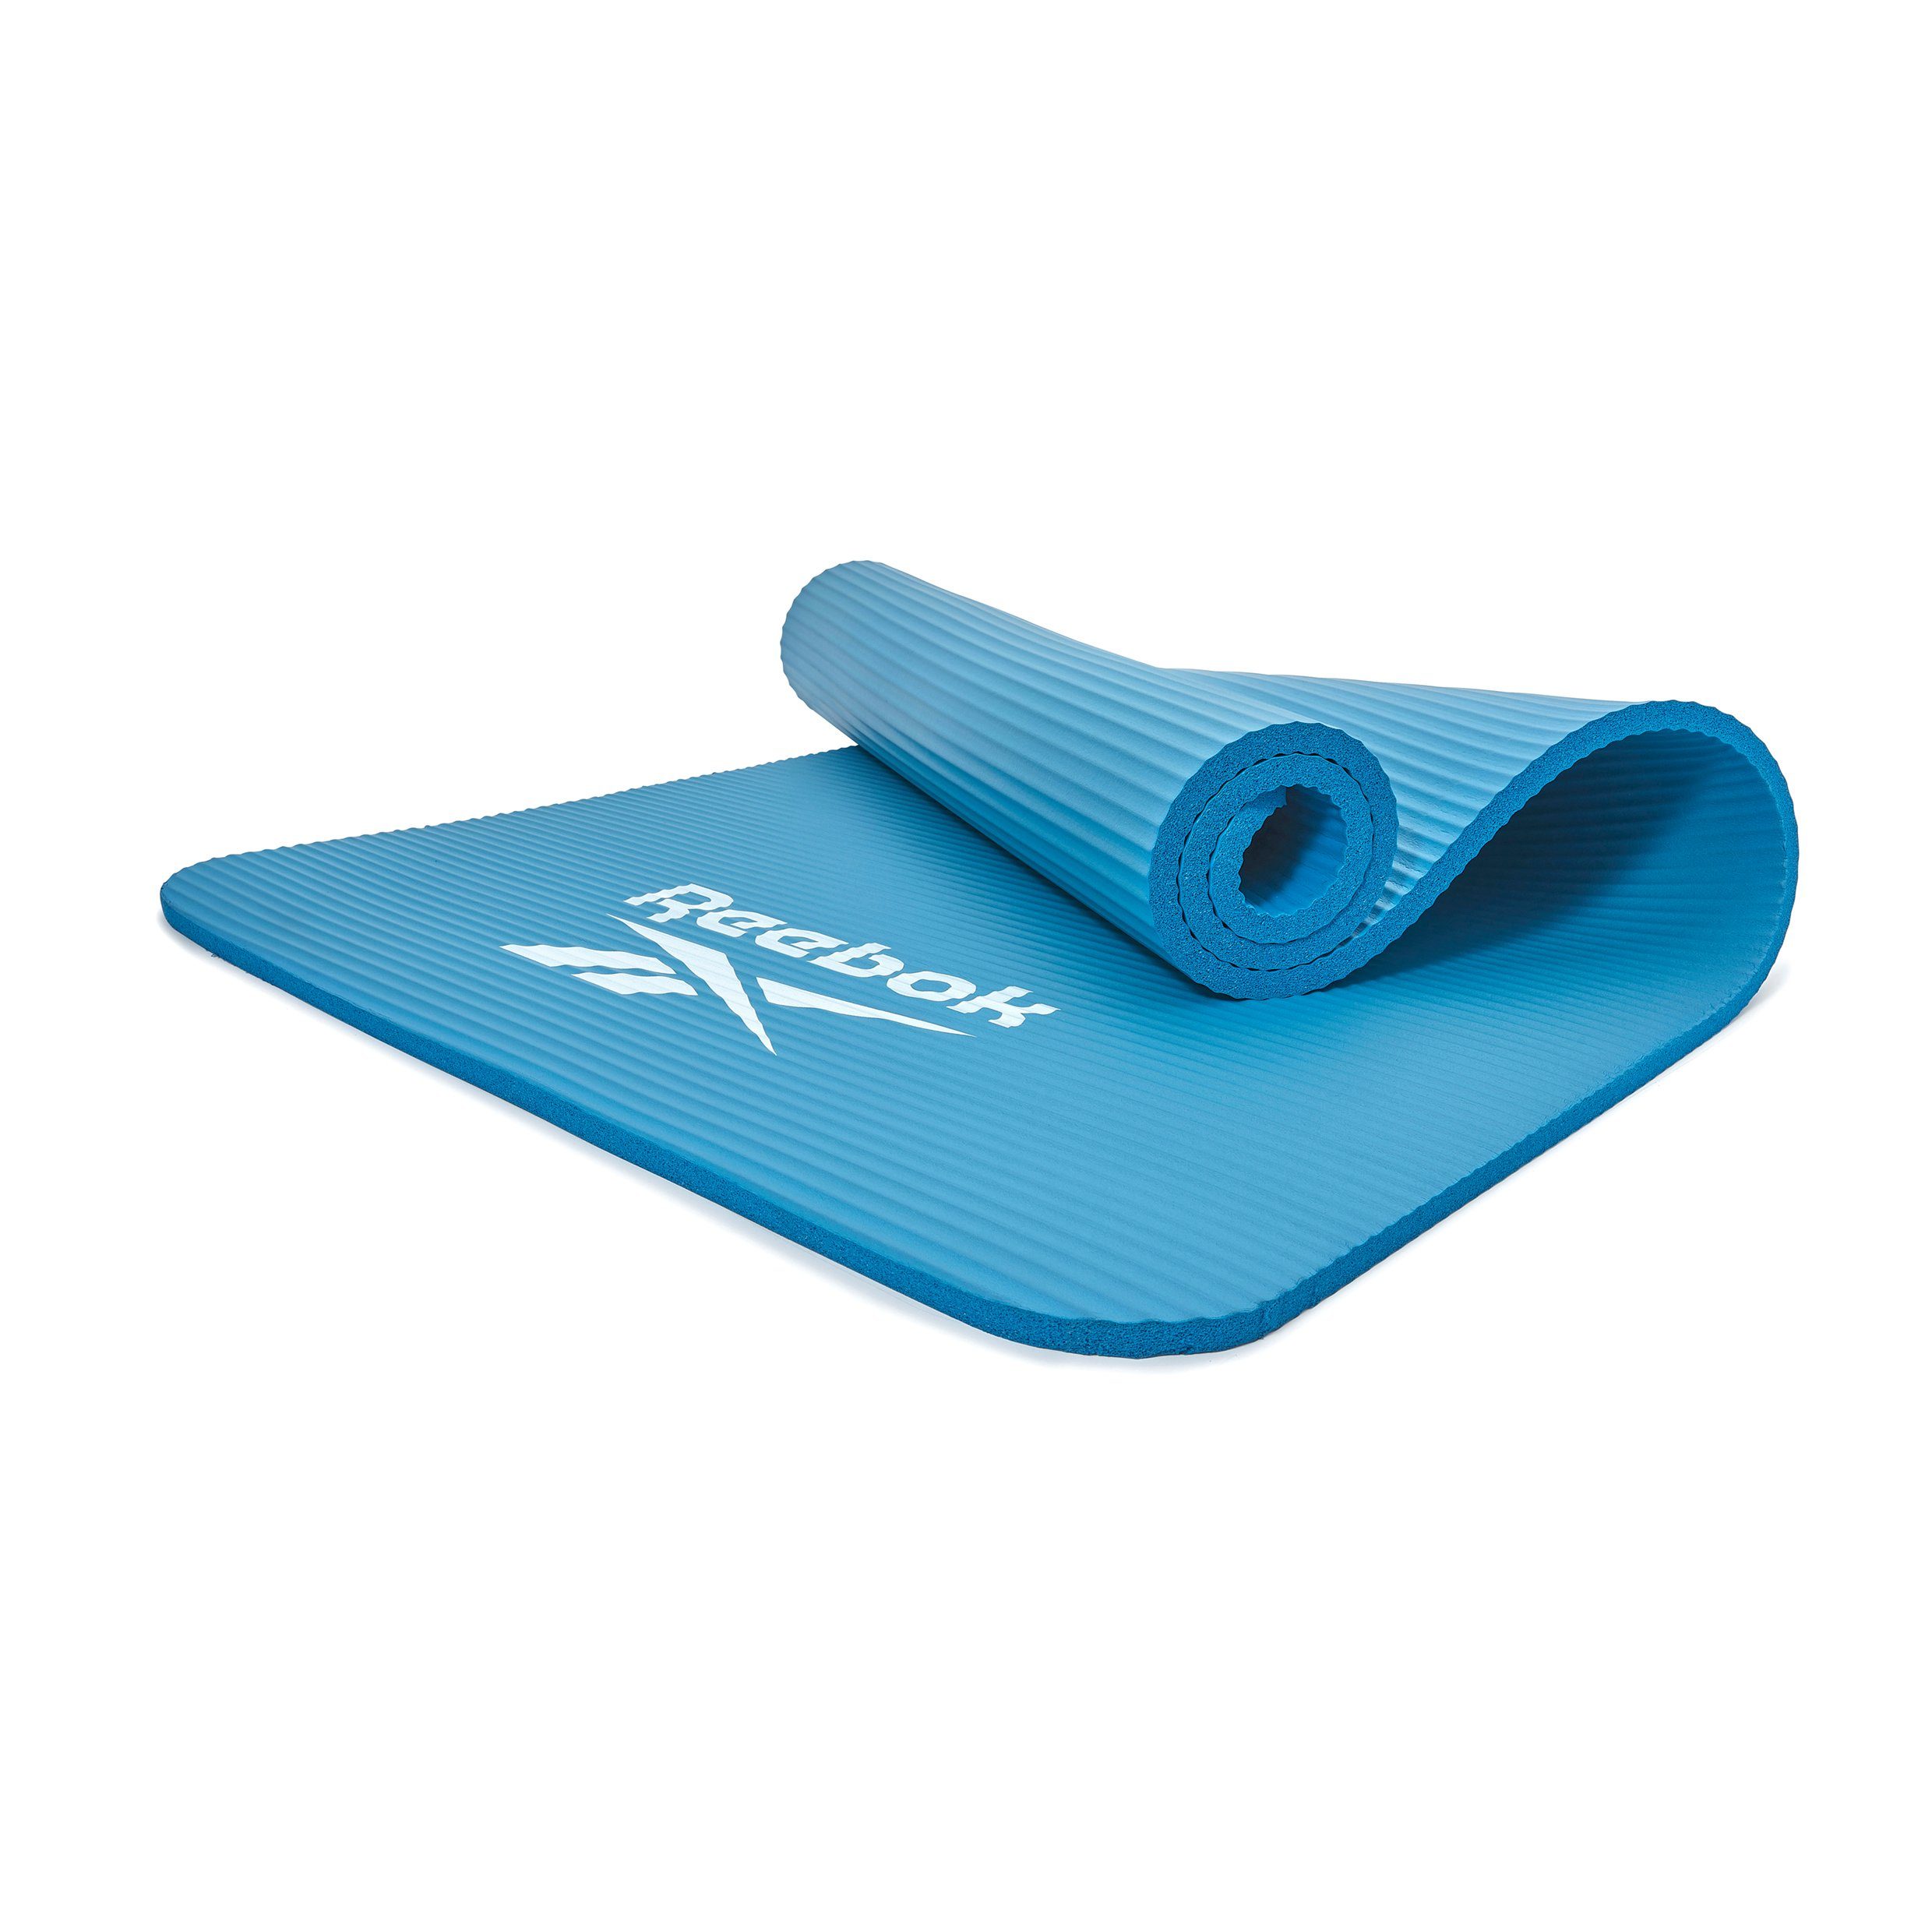 Reebok Fitnessmatte Reebok Fitness-/Trainingsmatte, 15mm, Rutschfeste Oberfläche blau